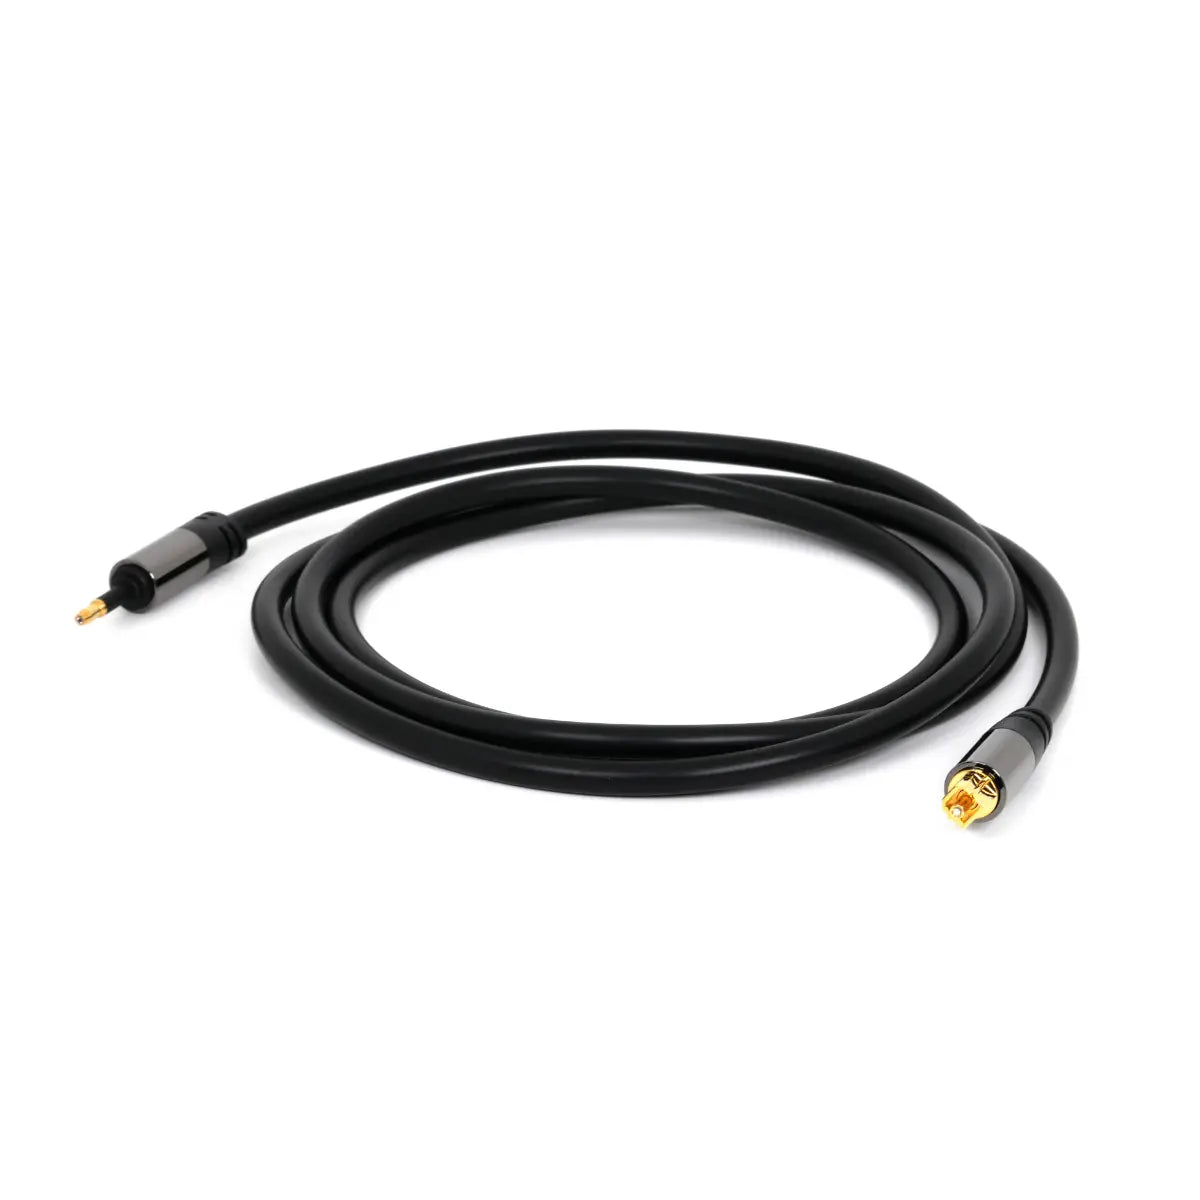 Câble optique - Câble optique - Noir, Type : Plastique - Simple blindage,  Connecteur 1 : Toslink mâle, Connecteur 2 : Toslink mâle, 0,5 mètres.